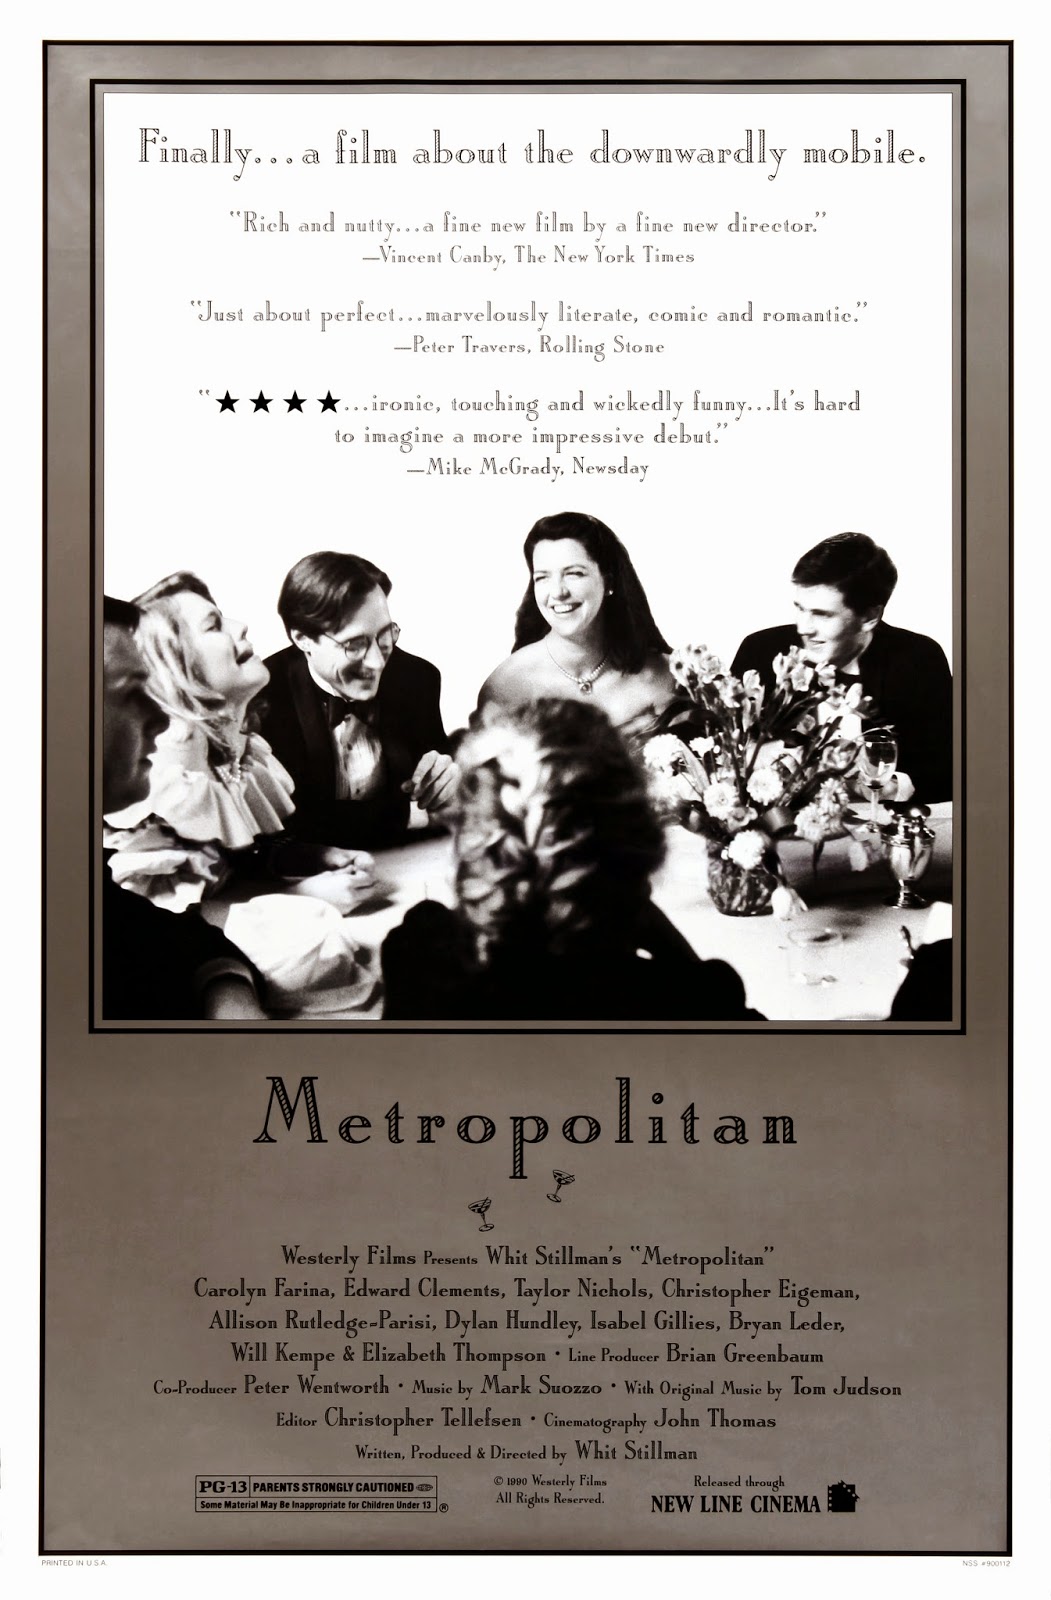 Metropolitan movie poster / Courtesy Whit Stillman